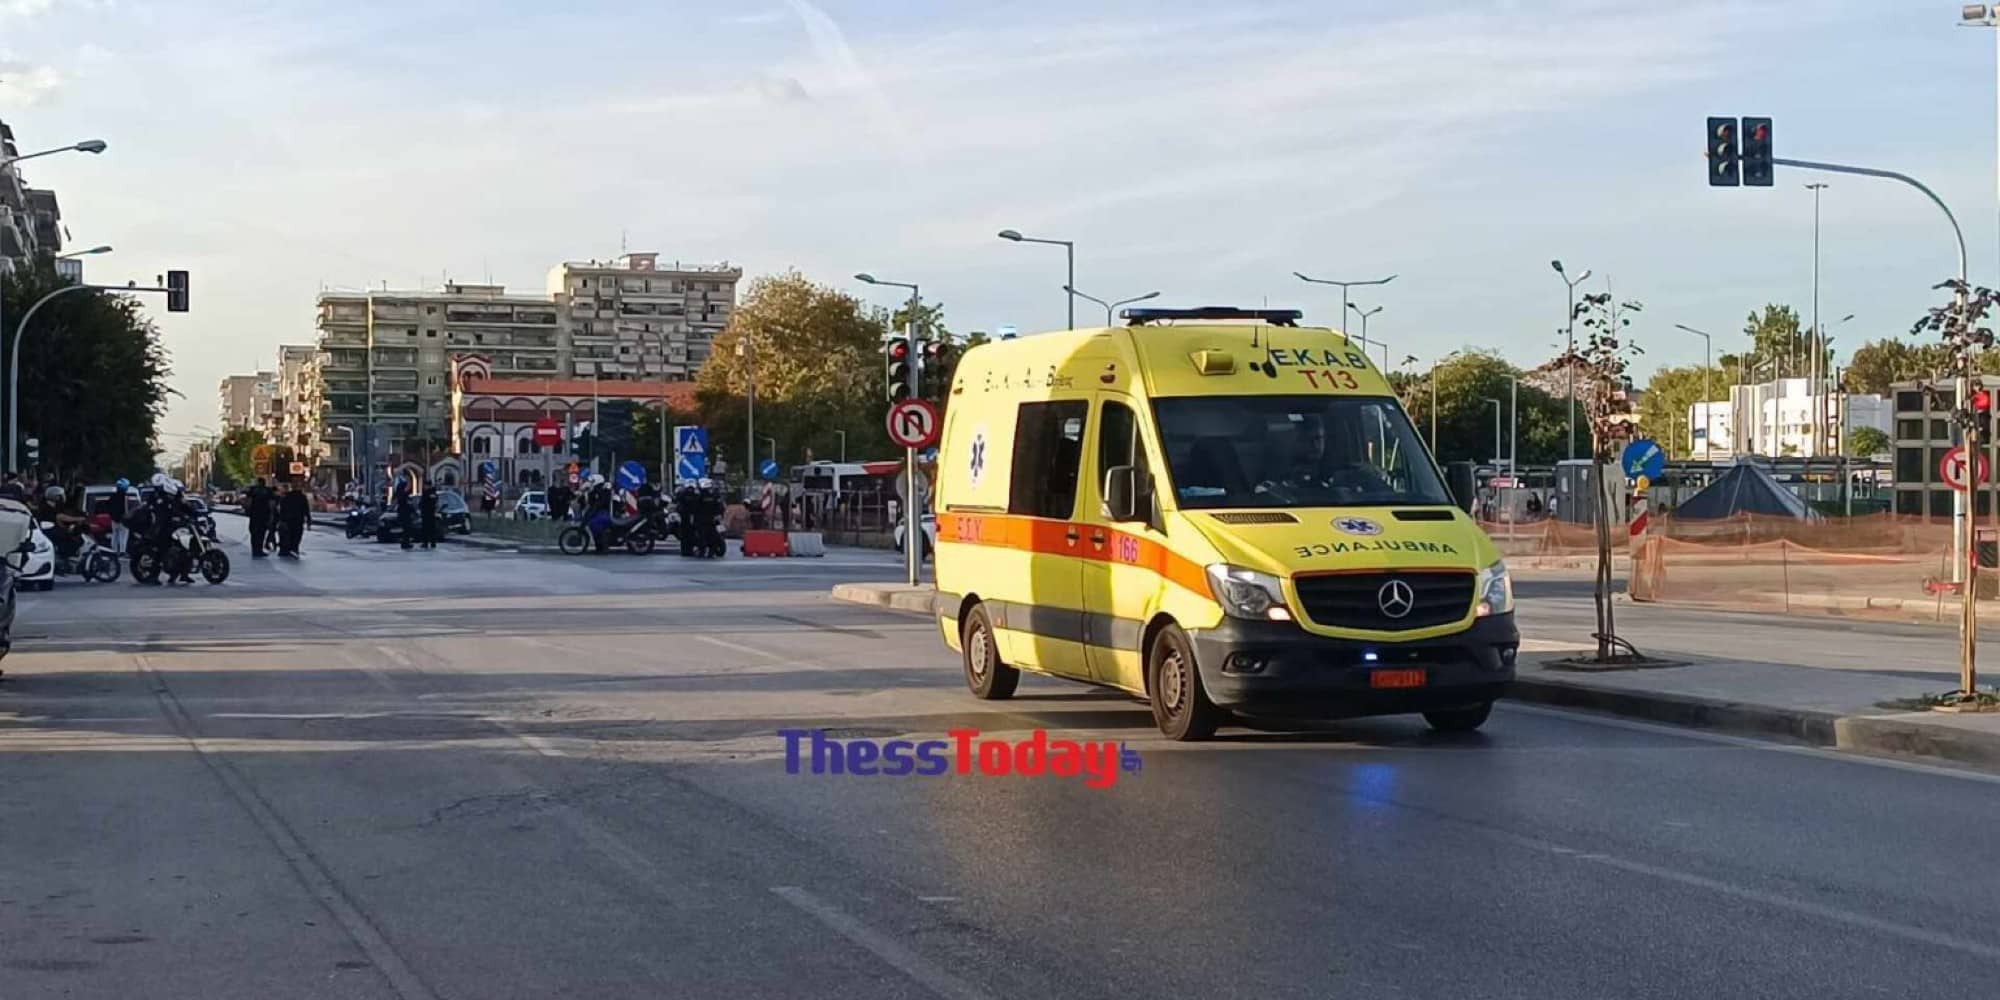 Εικόνα από το τροχαίο δυστύχημα στη Θεσσαλονίκη